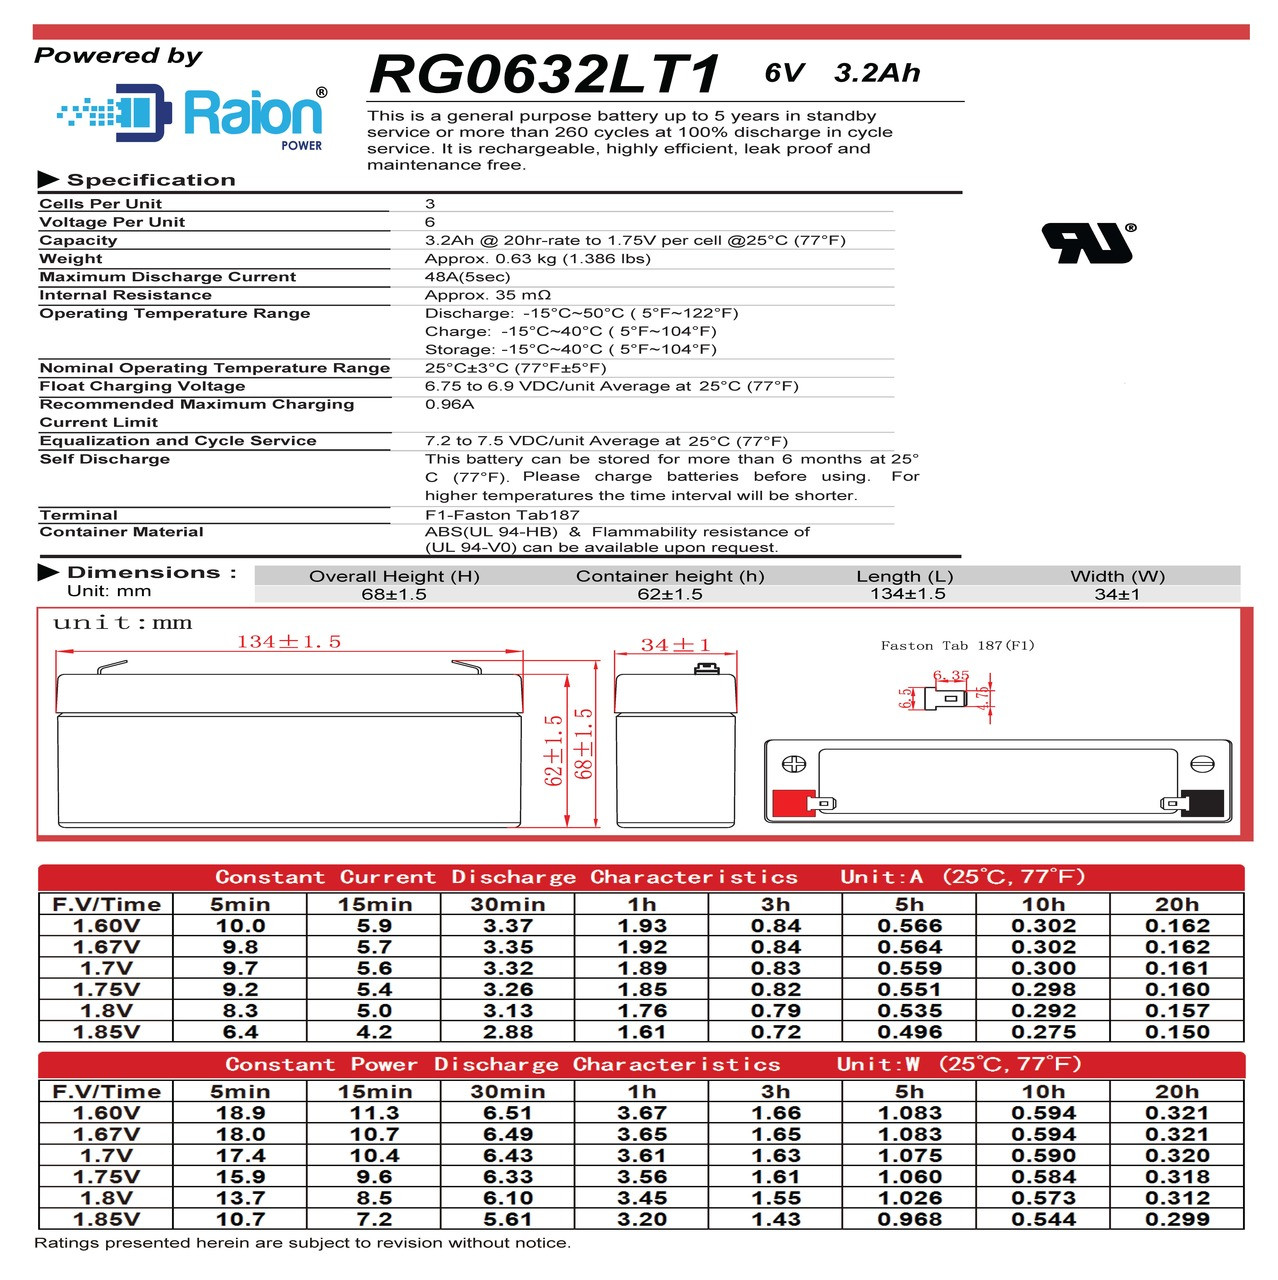 Raion Power RG0632LT1 6V 3.2Ah Battery Data Sheet for Europower EP 3-6